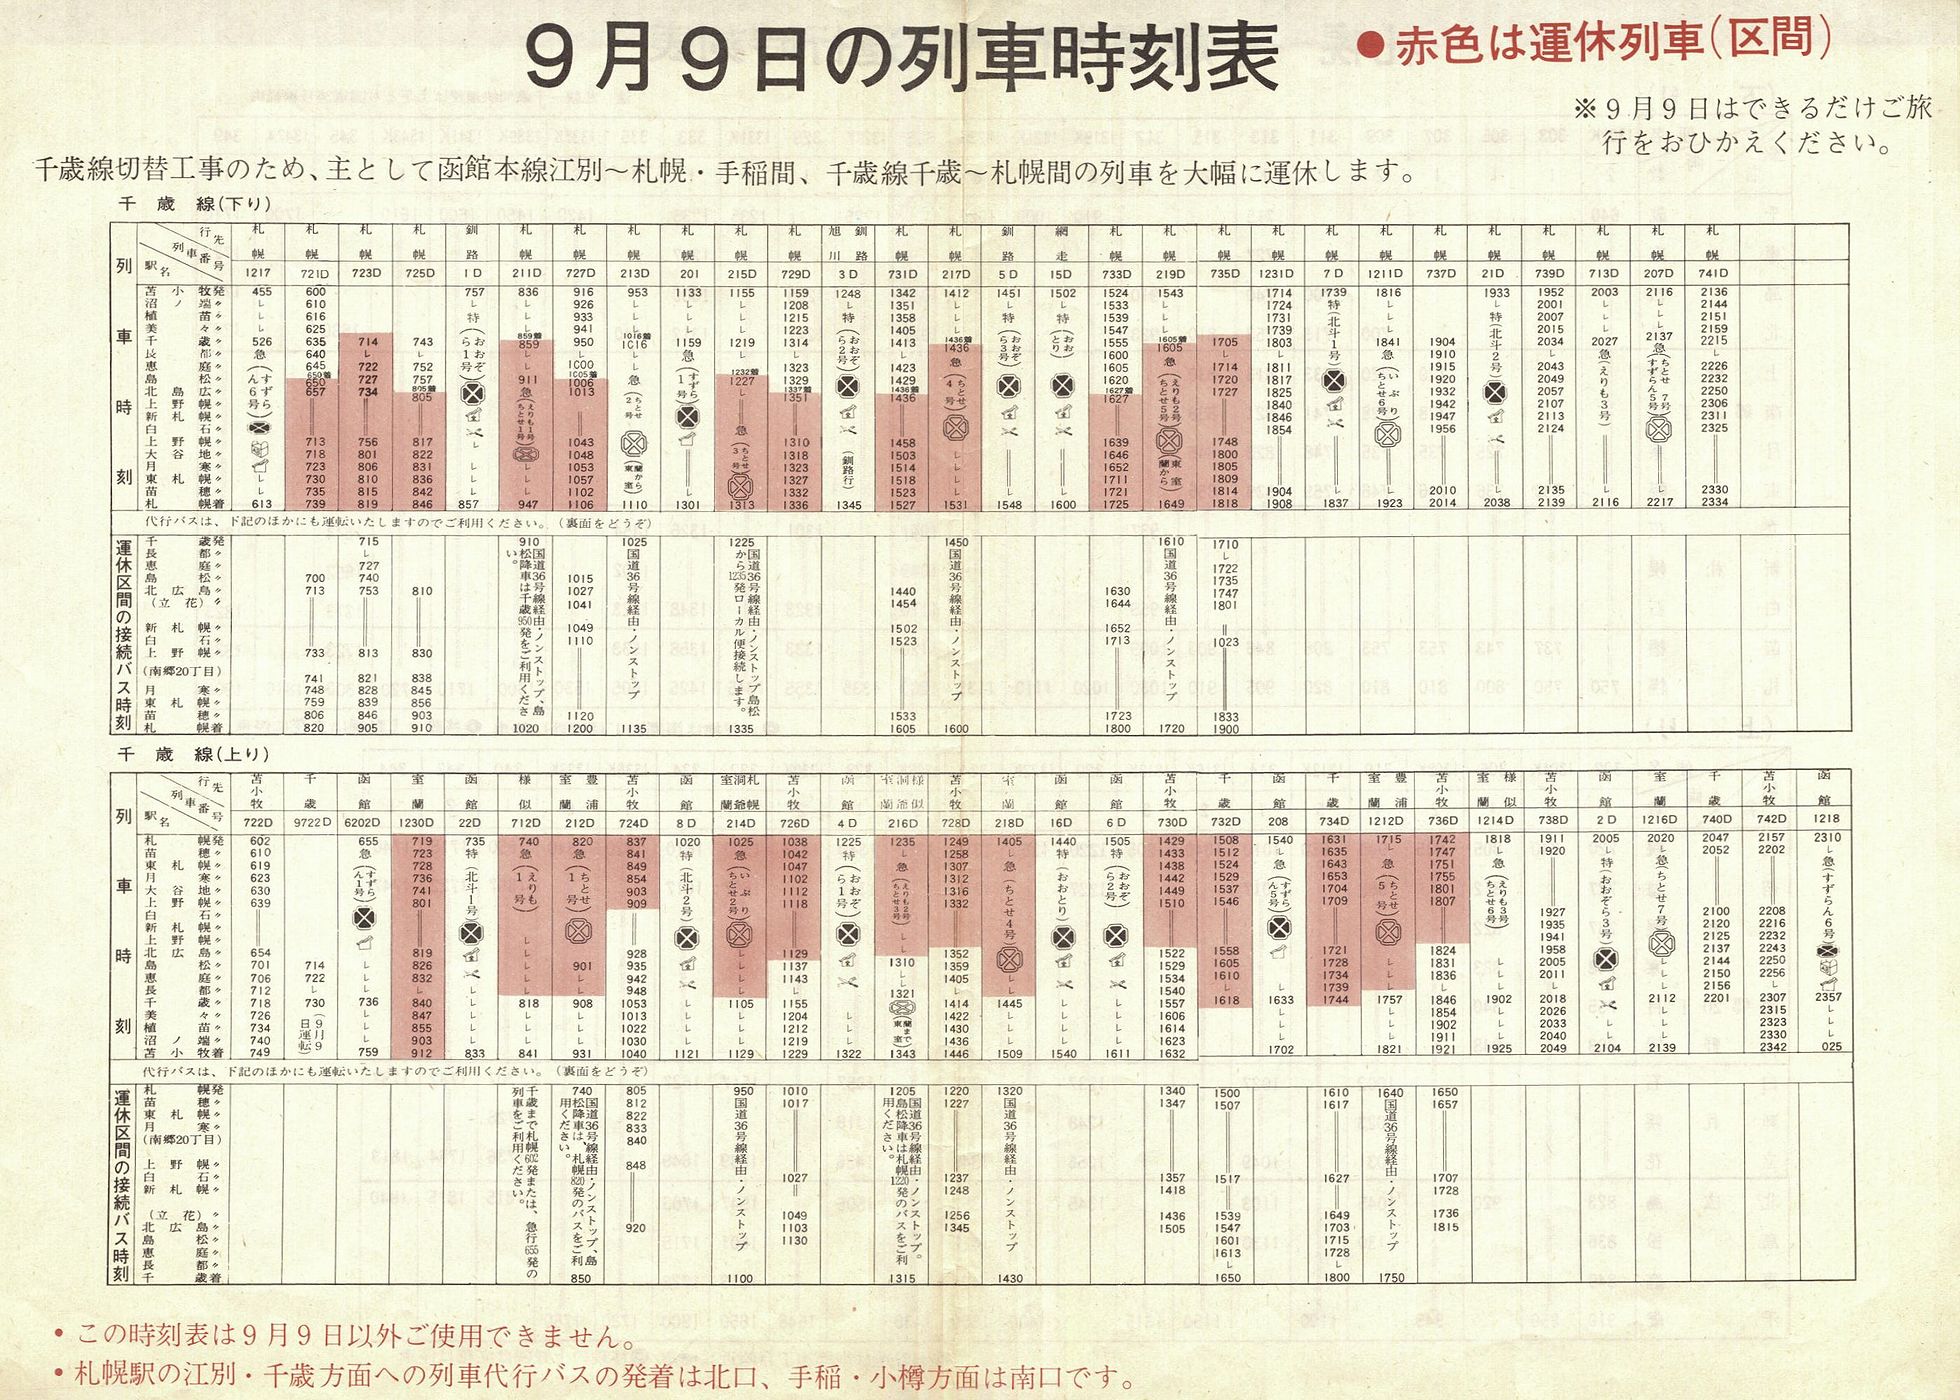 1973-09-09実施_国鉄千歳線切替_千歳線列車時刻表